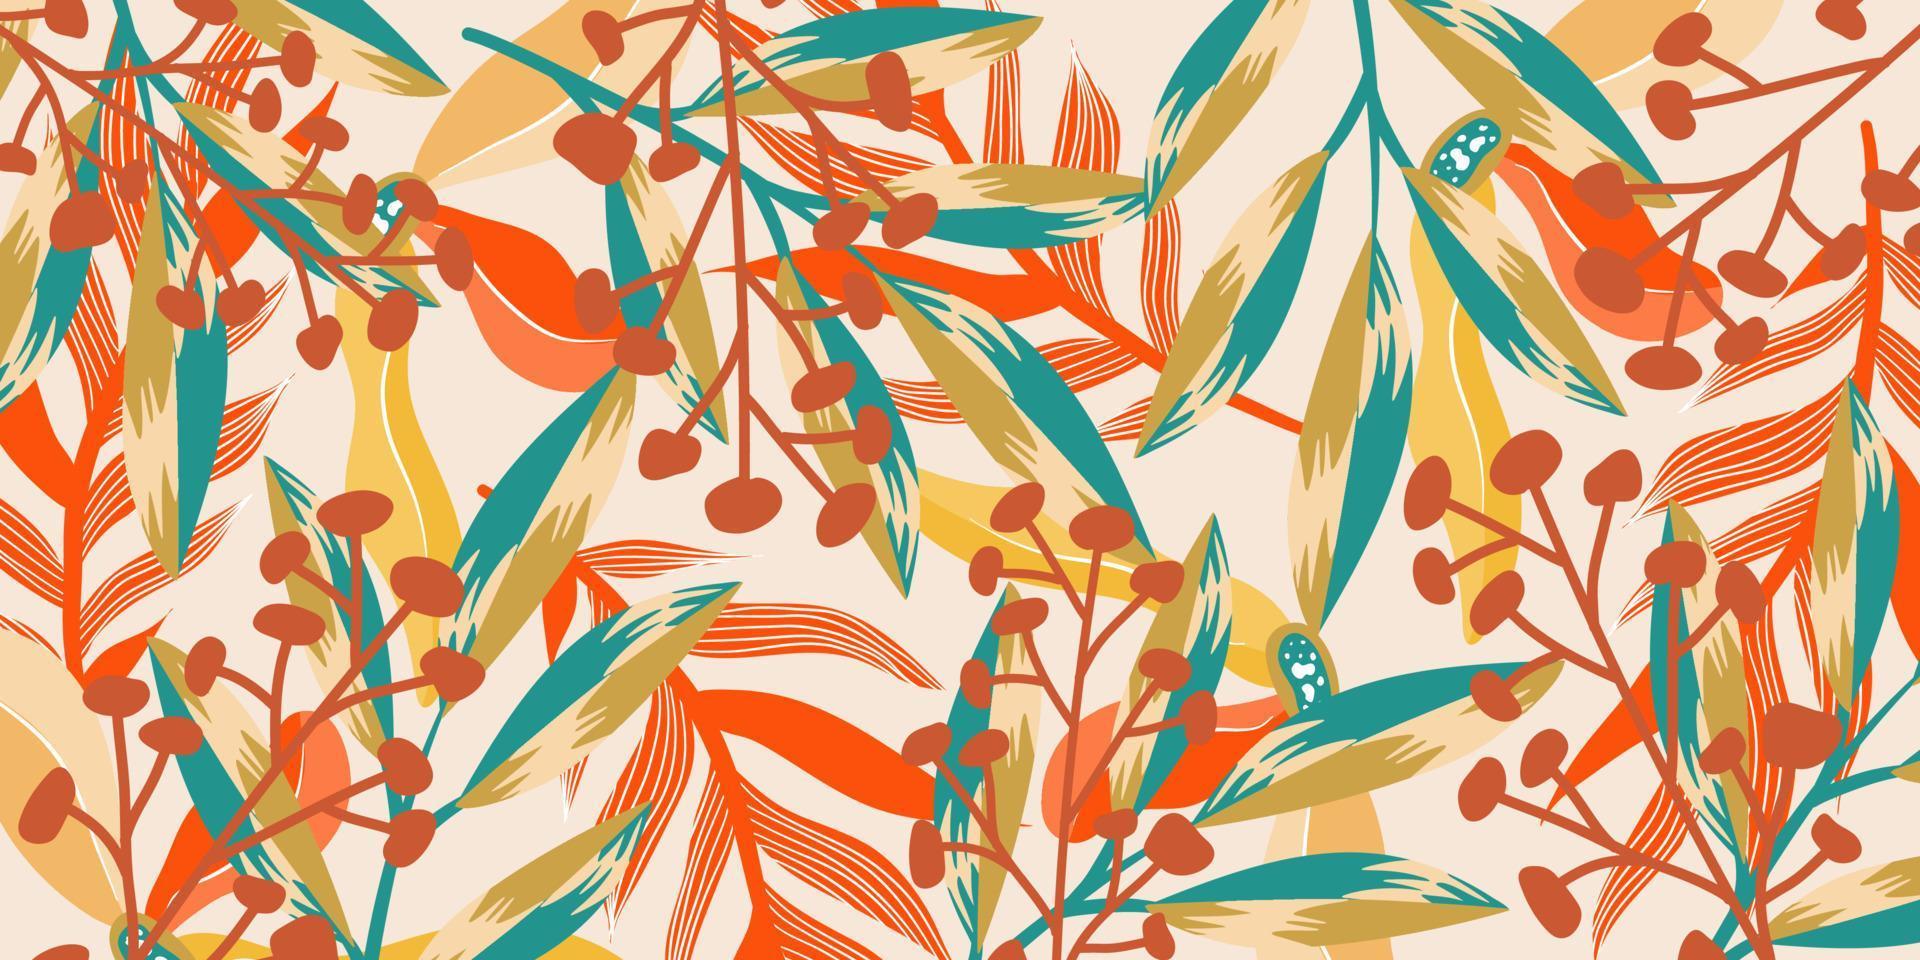 sfondo estetico astratto giungla boho con foglie tropicali. giungla boho in stile moderno. sfondo floreale foglia etnica art. design piatto disegnato a mano contemporaneo. arte tropicale astratta vettore